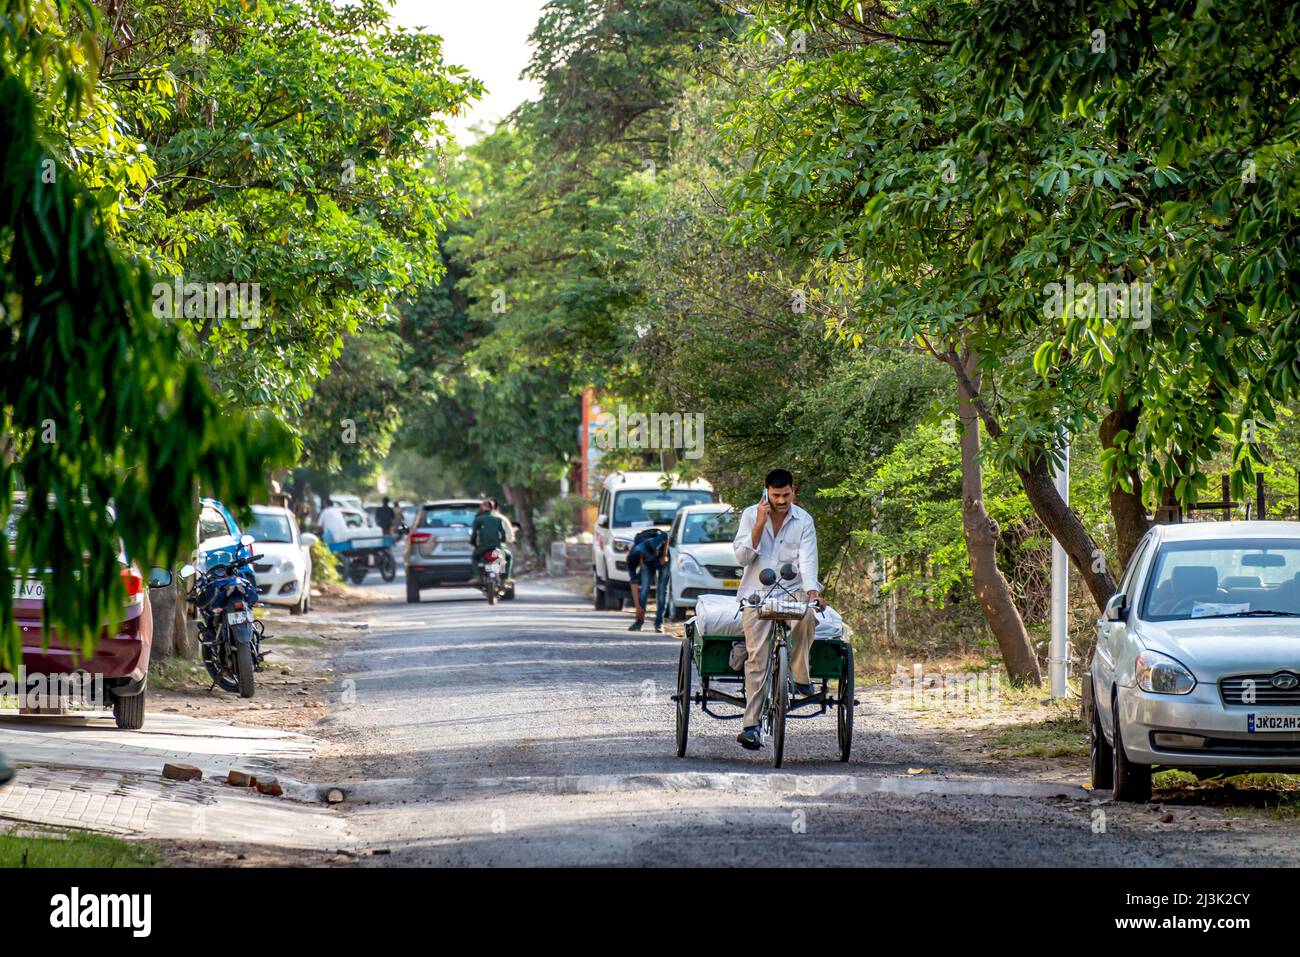 Straßenszene in einem Dorf in Indien mit Fahrzeugen und Motorrädern und einem Mann, der mit einem Anhänger fährt und telefoniert Stockfoto